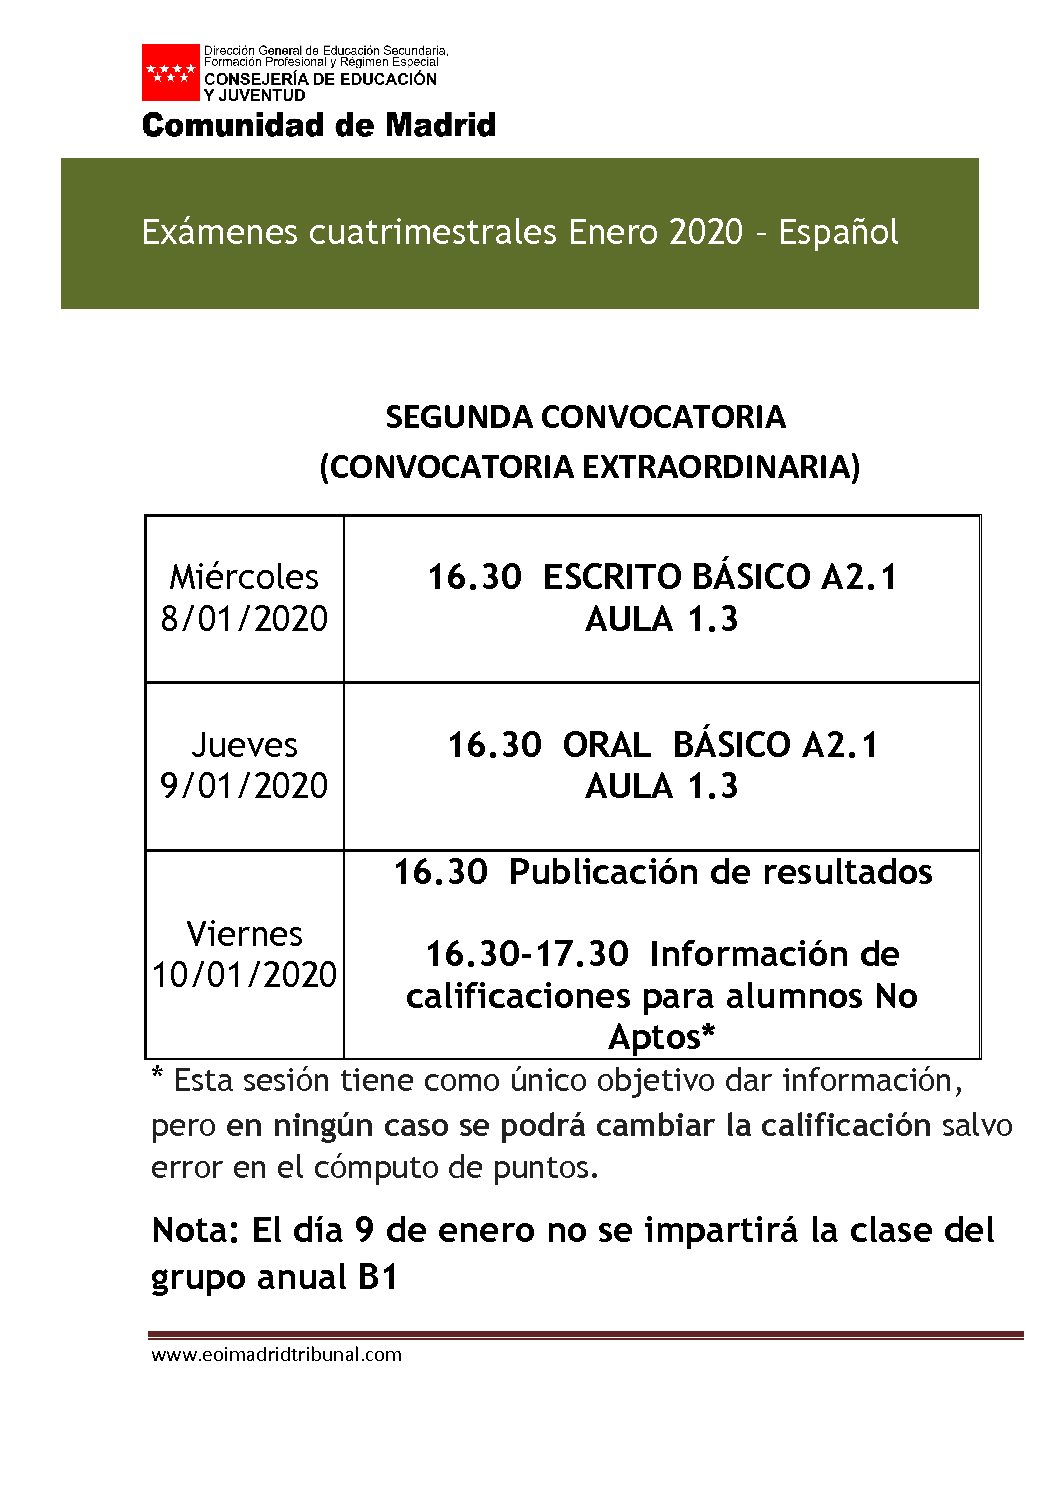 exámenes-cuatrimestrales-extraordinaria-español-2019-2020